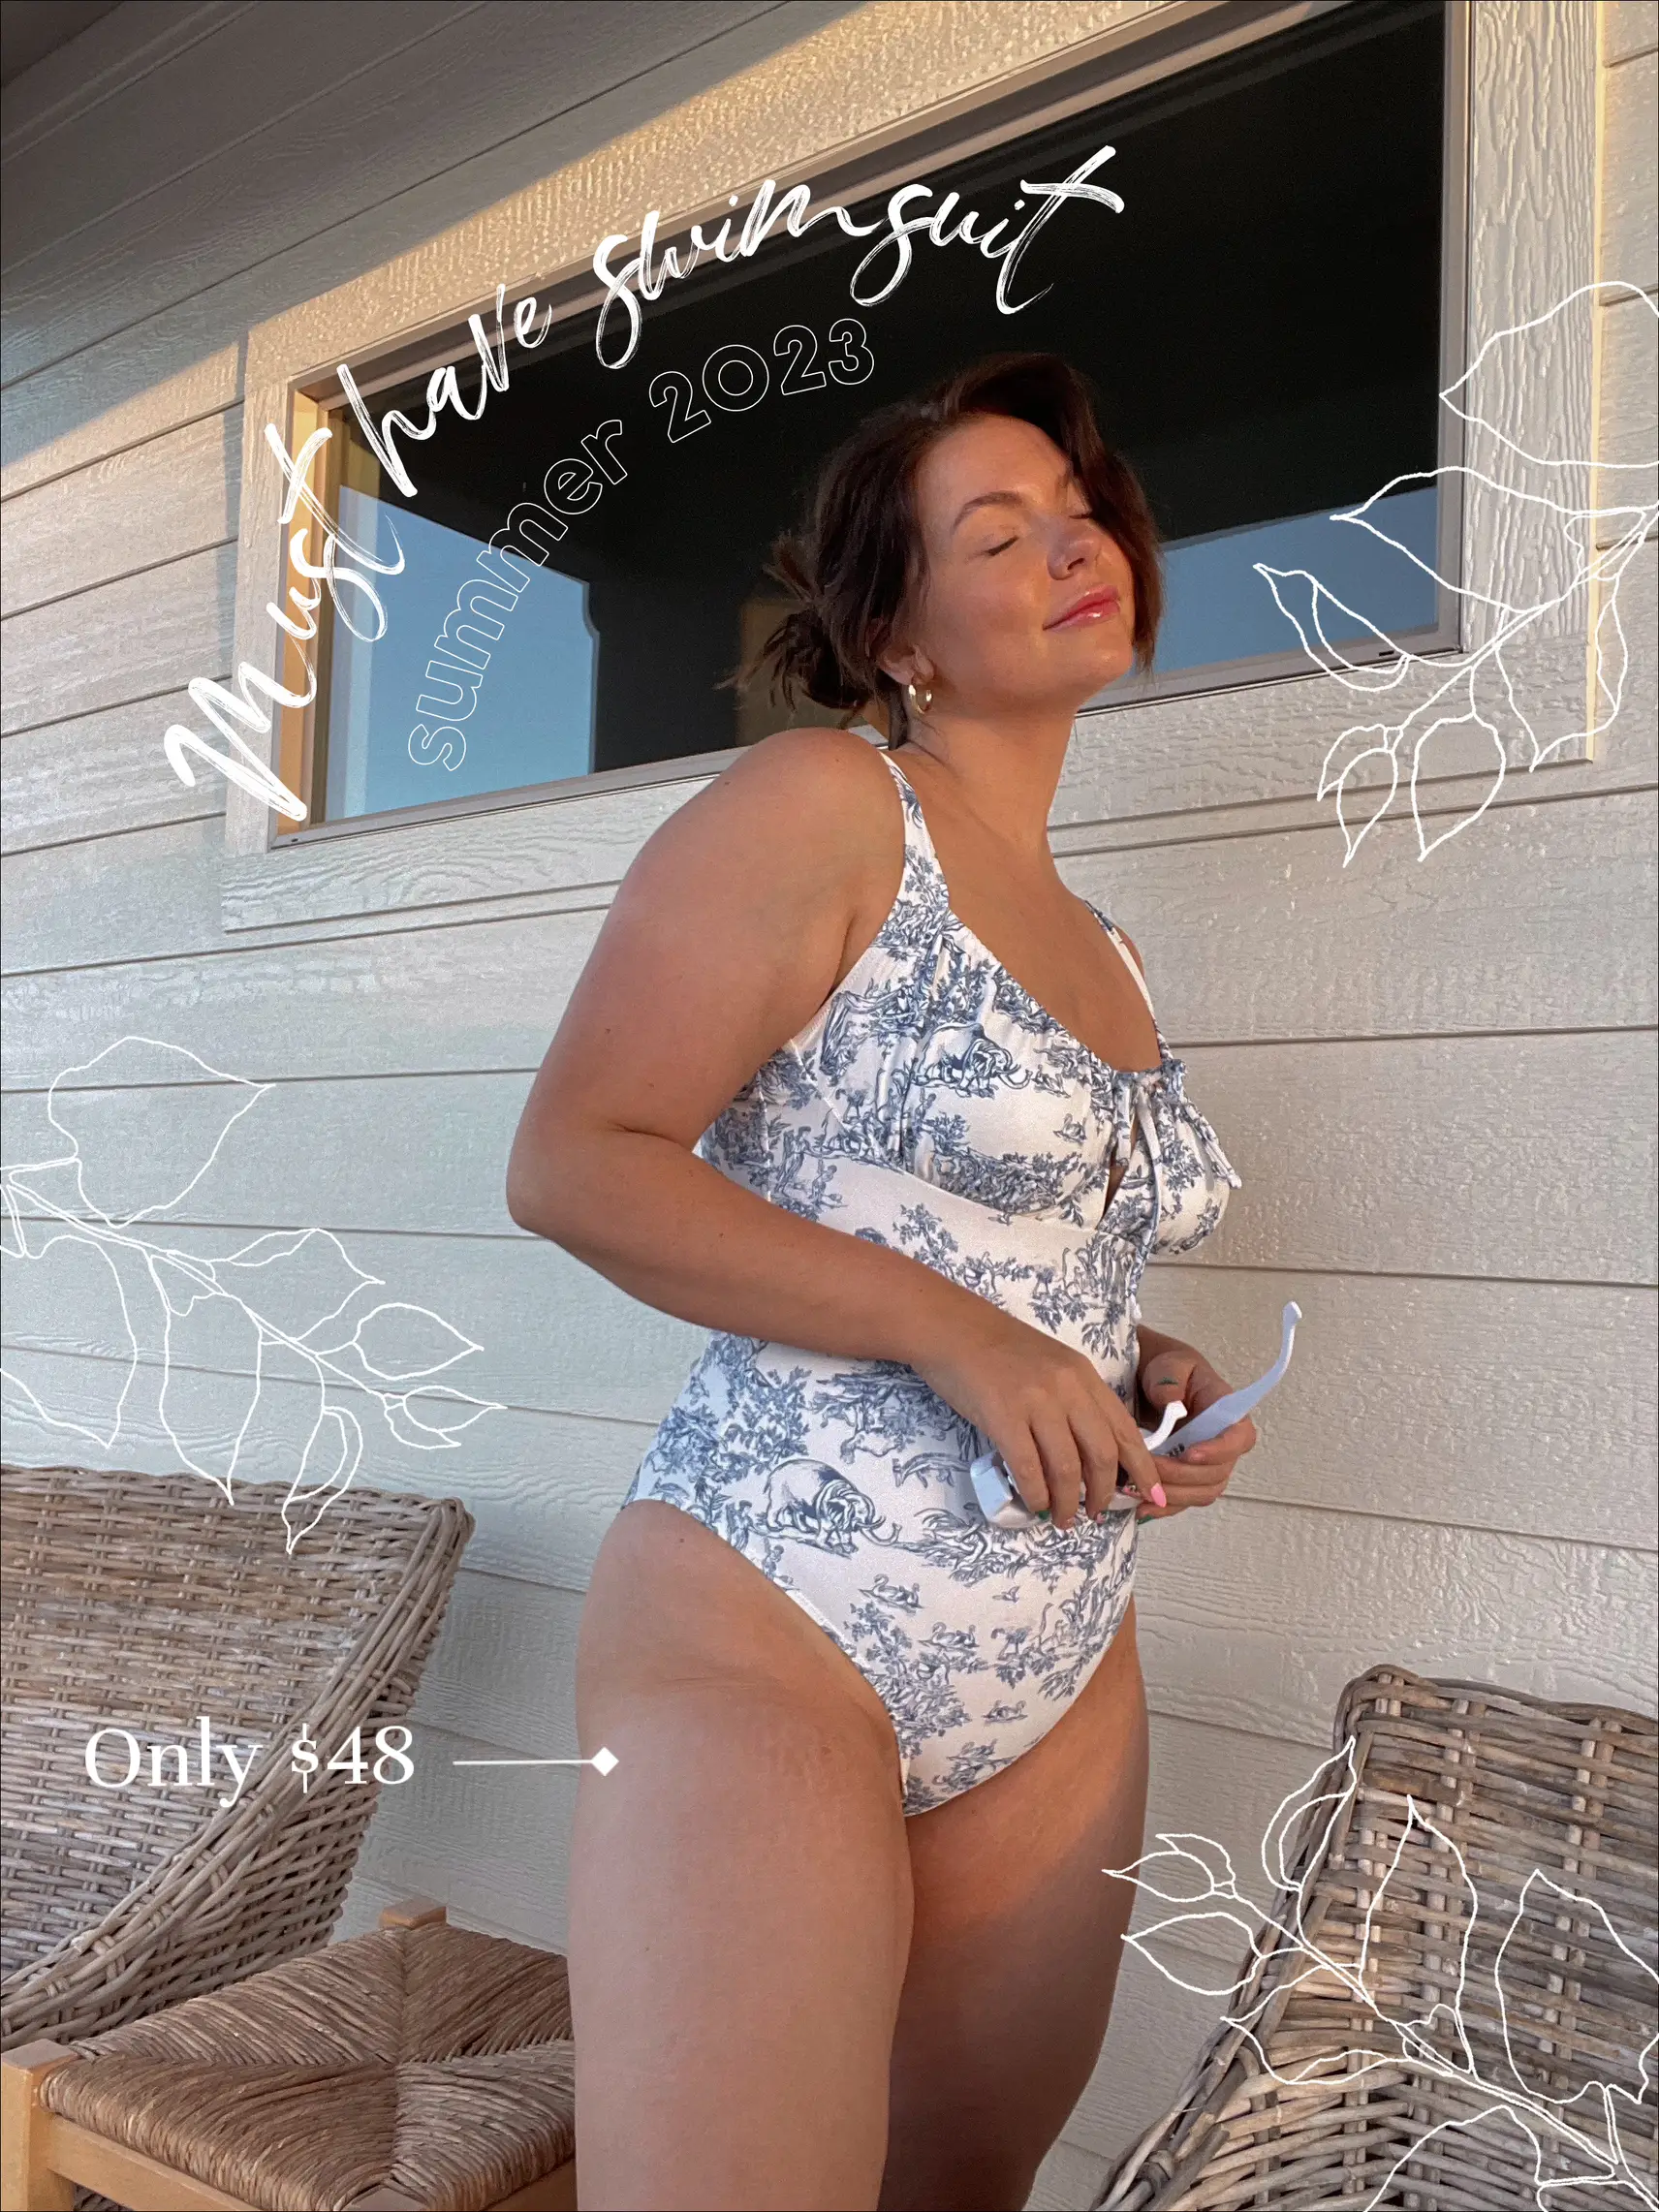 Swimsuits I Wore in Aruba - Midsize / Mom Bod